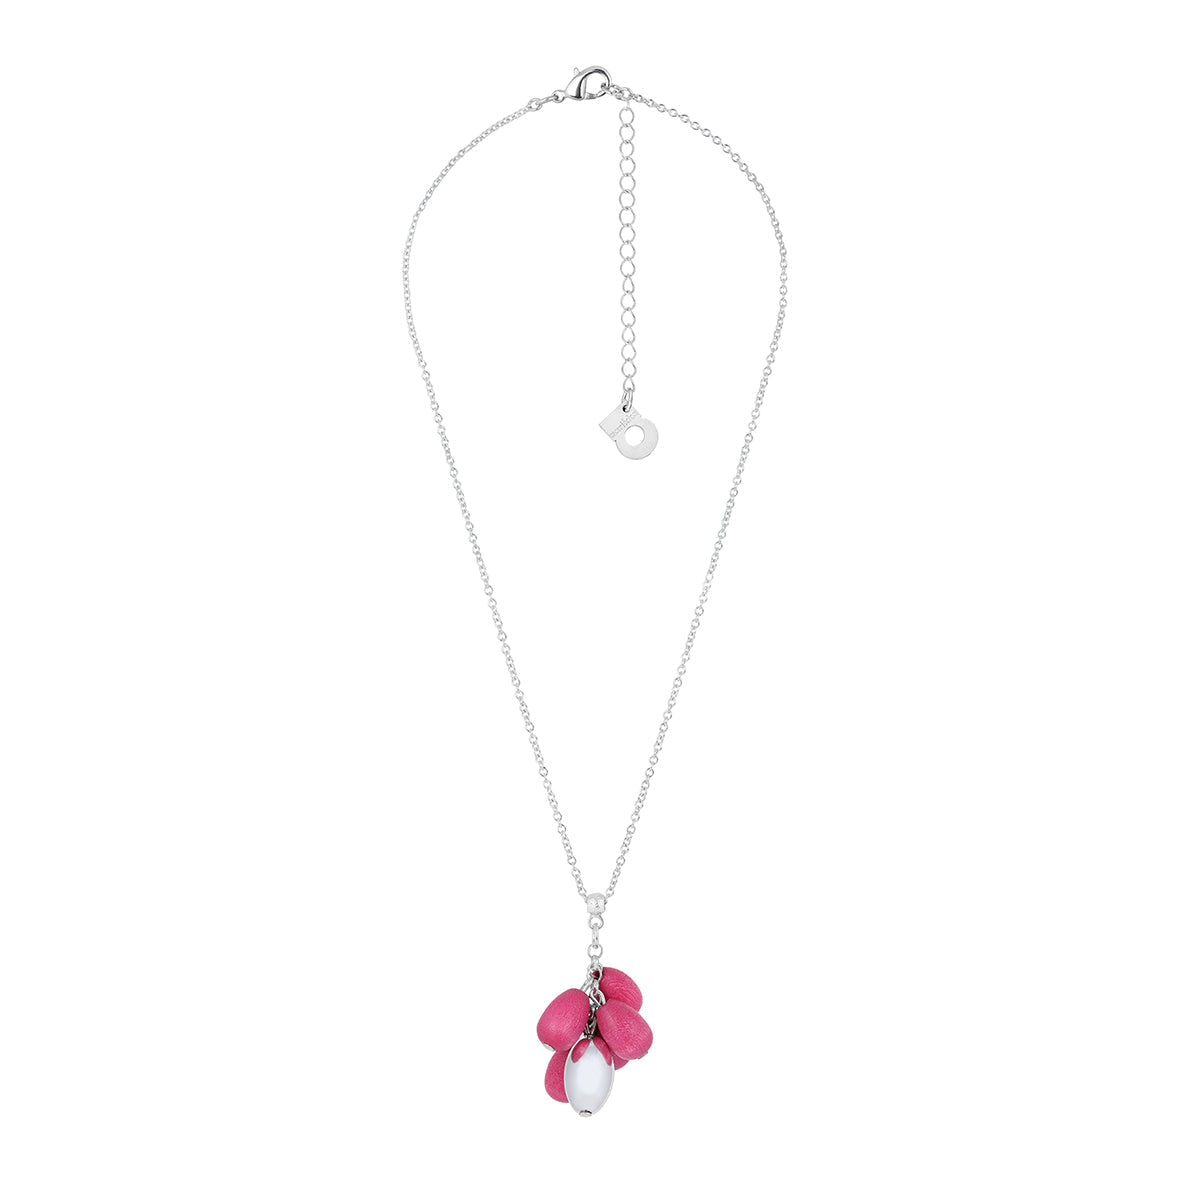 Papaija necklace, pink